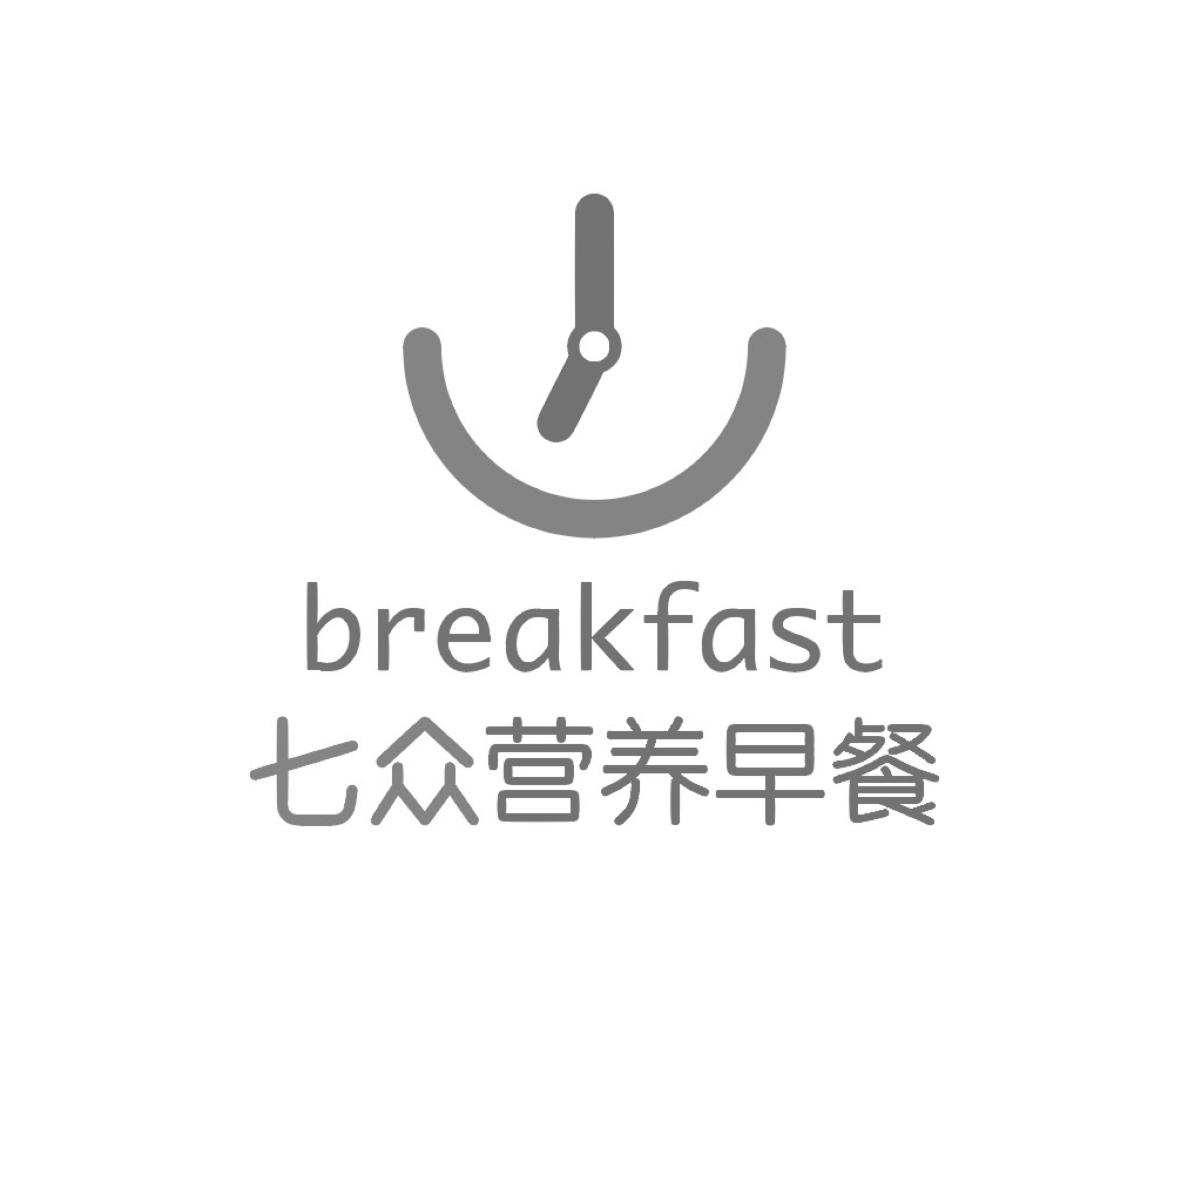 七众营养早餐 breakfast                    